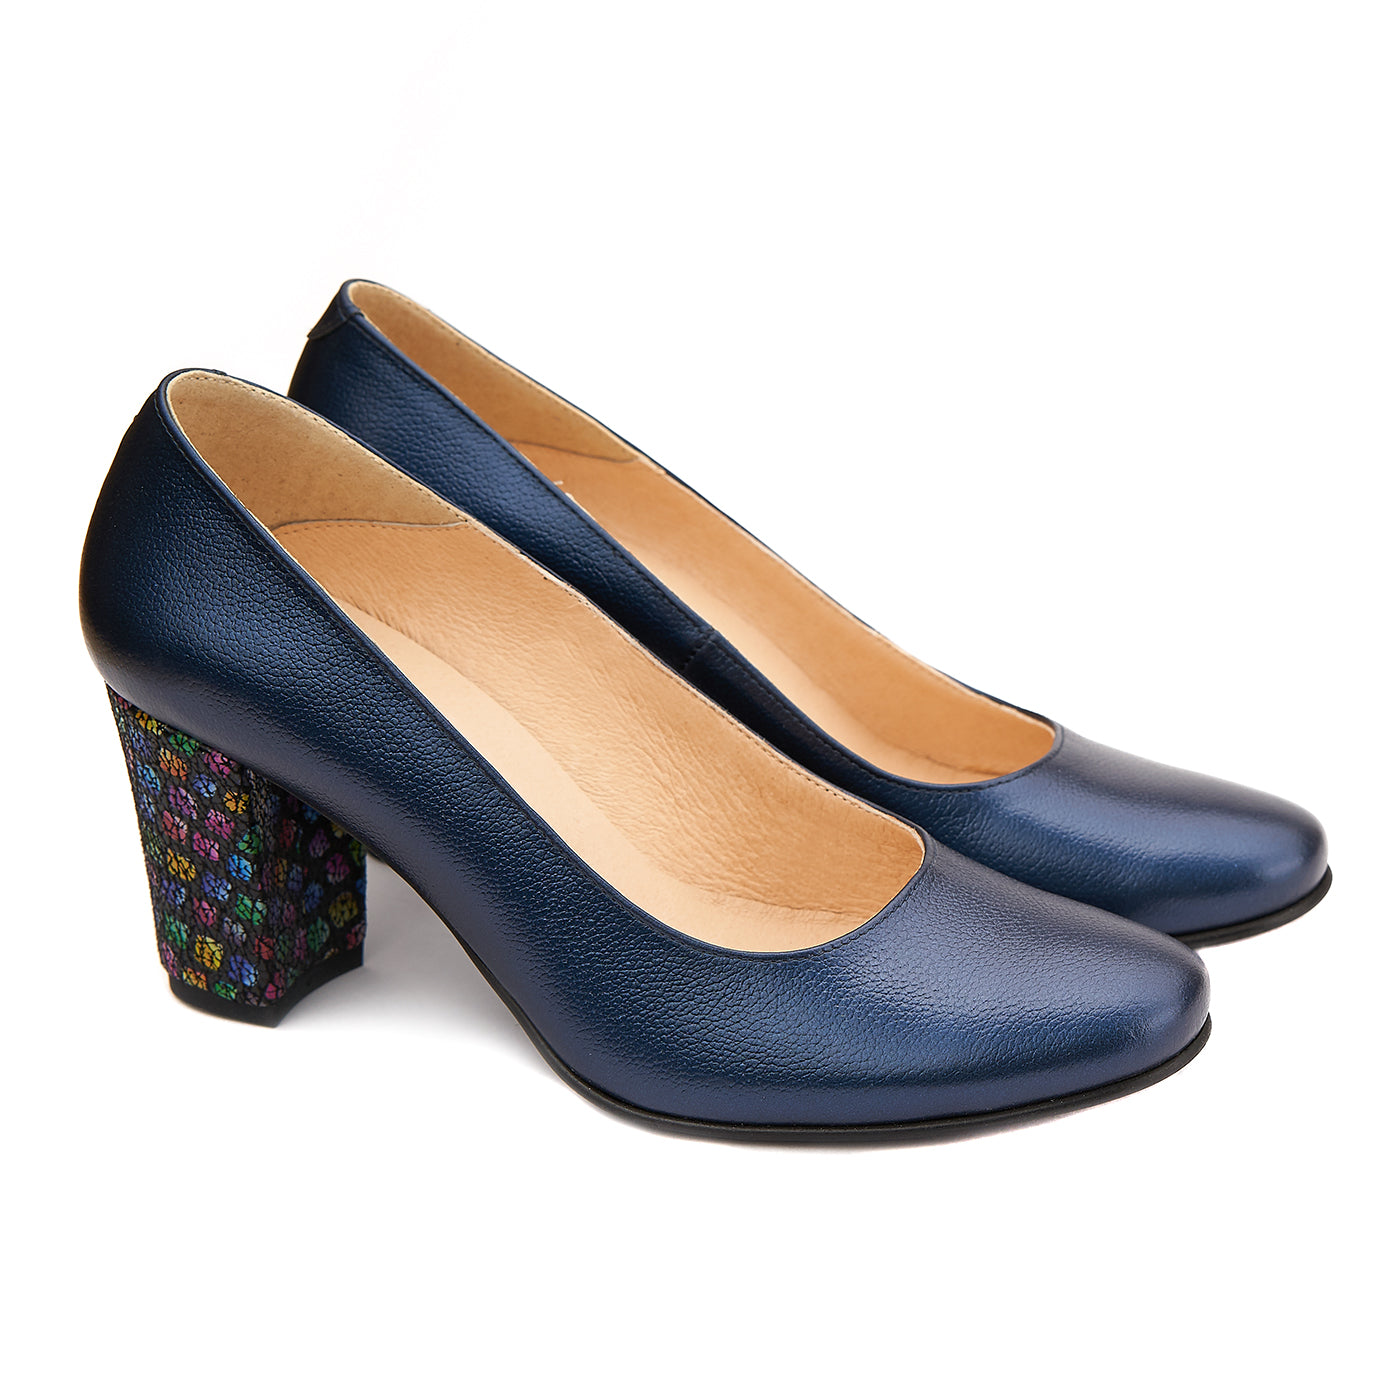 Pantofi dama eleganti din piele naturala bleumarin 4091